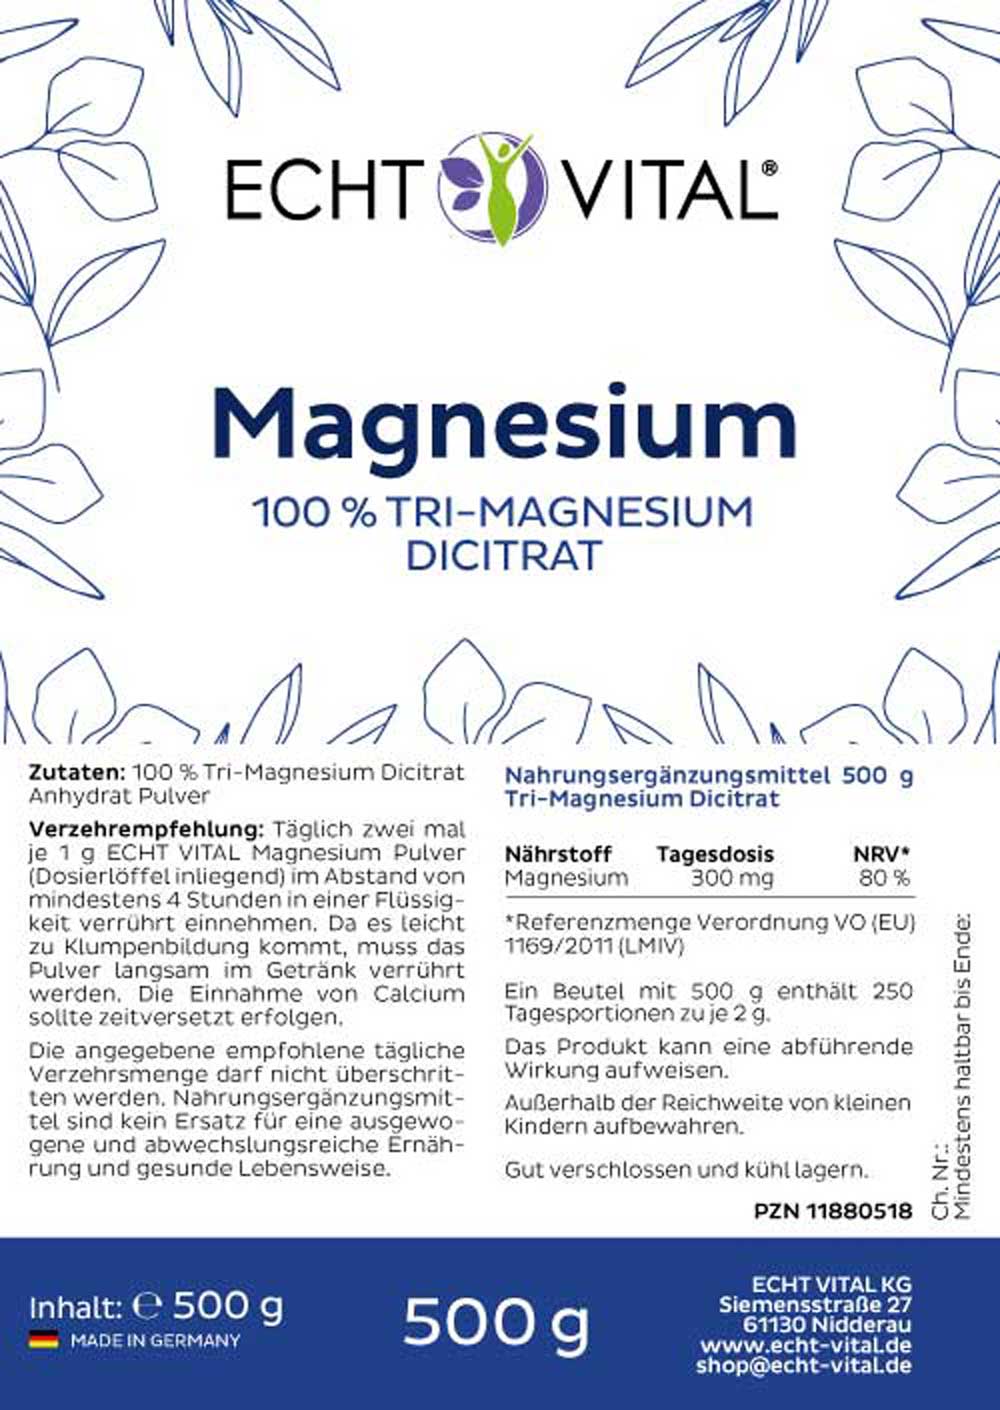 Etikett Magnesium Dicitrat Pulver von Echt Vital in 500 Gramm Packung